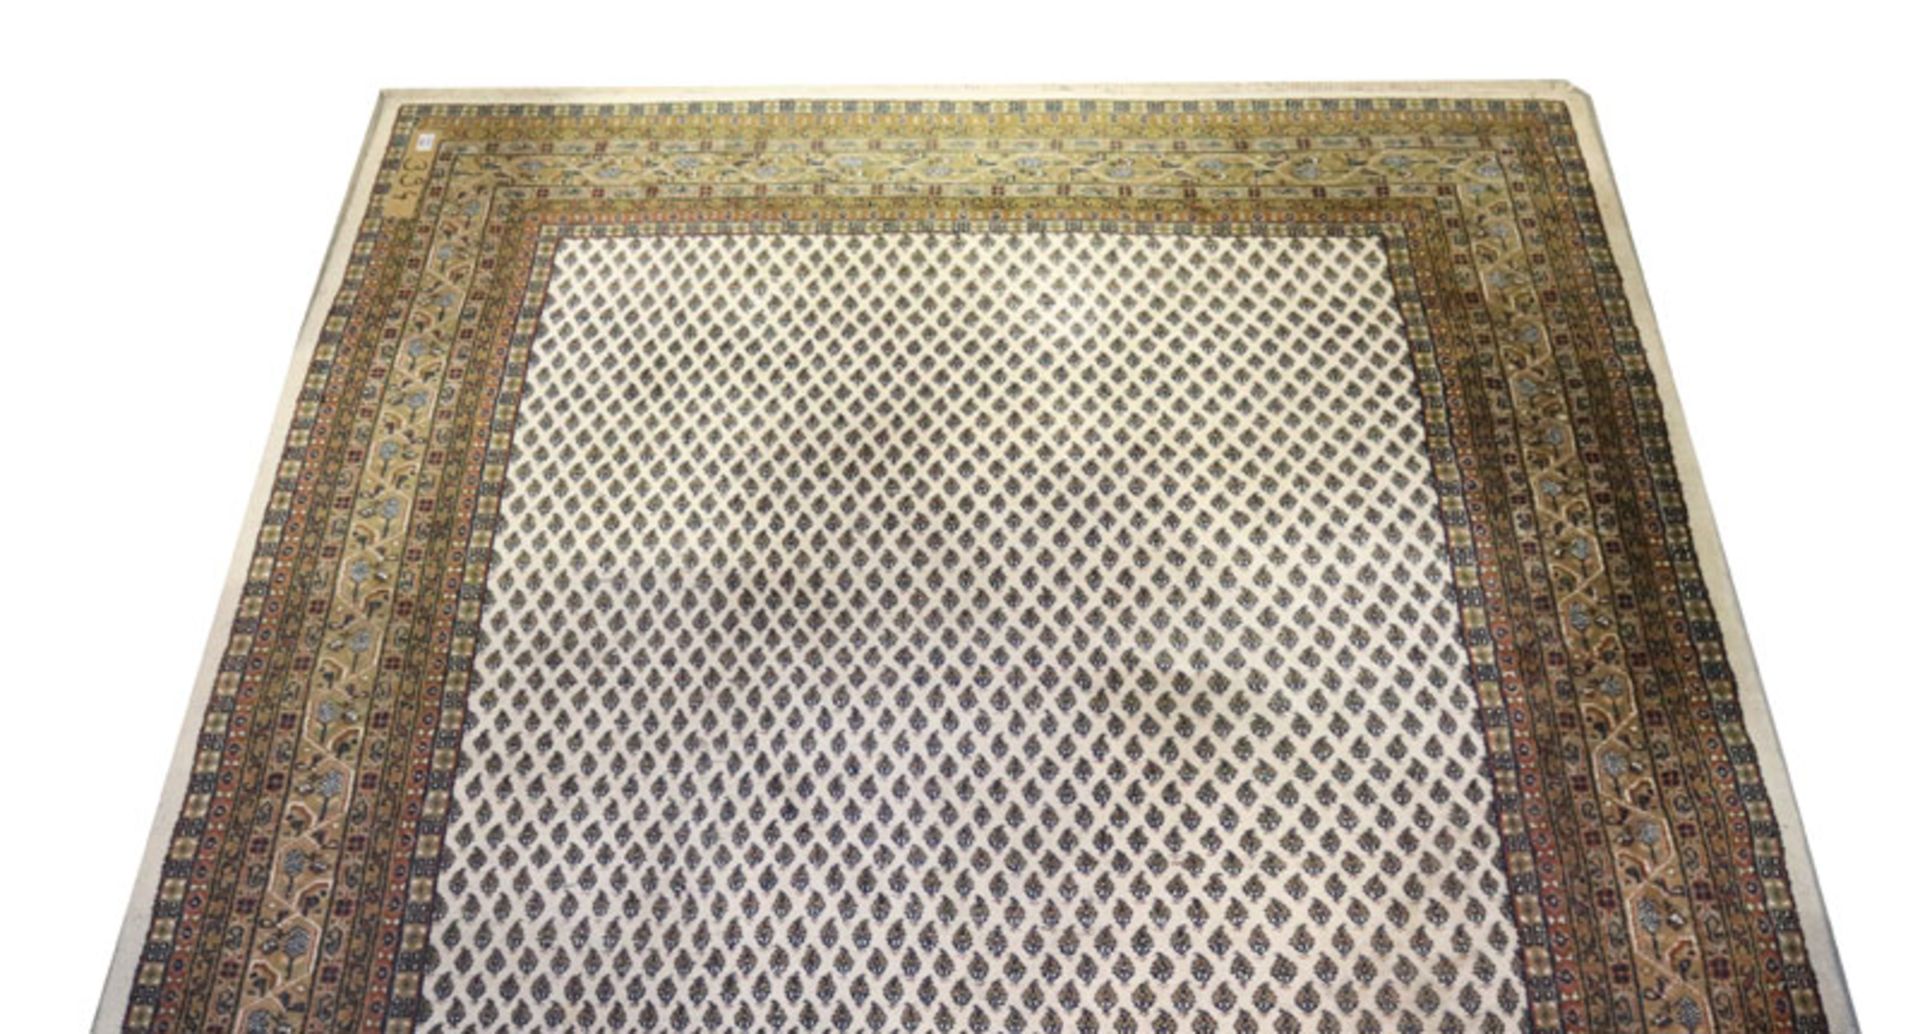 Teppich, Mir, beige/grün/braun, Gebrauchsspuren, fleckig, 304 cm x 196 cm